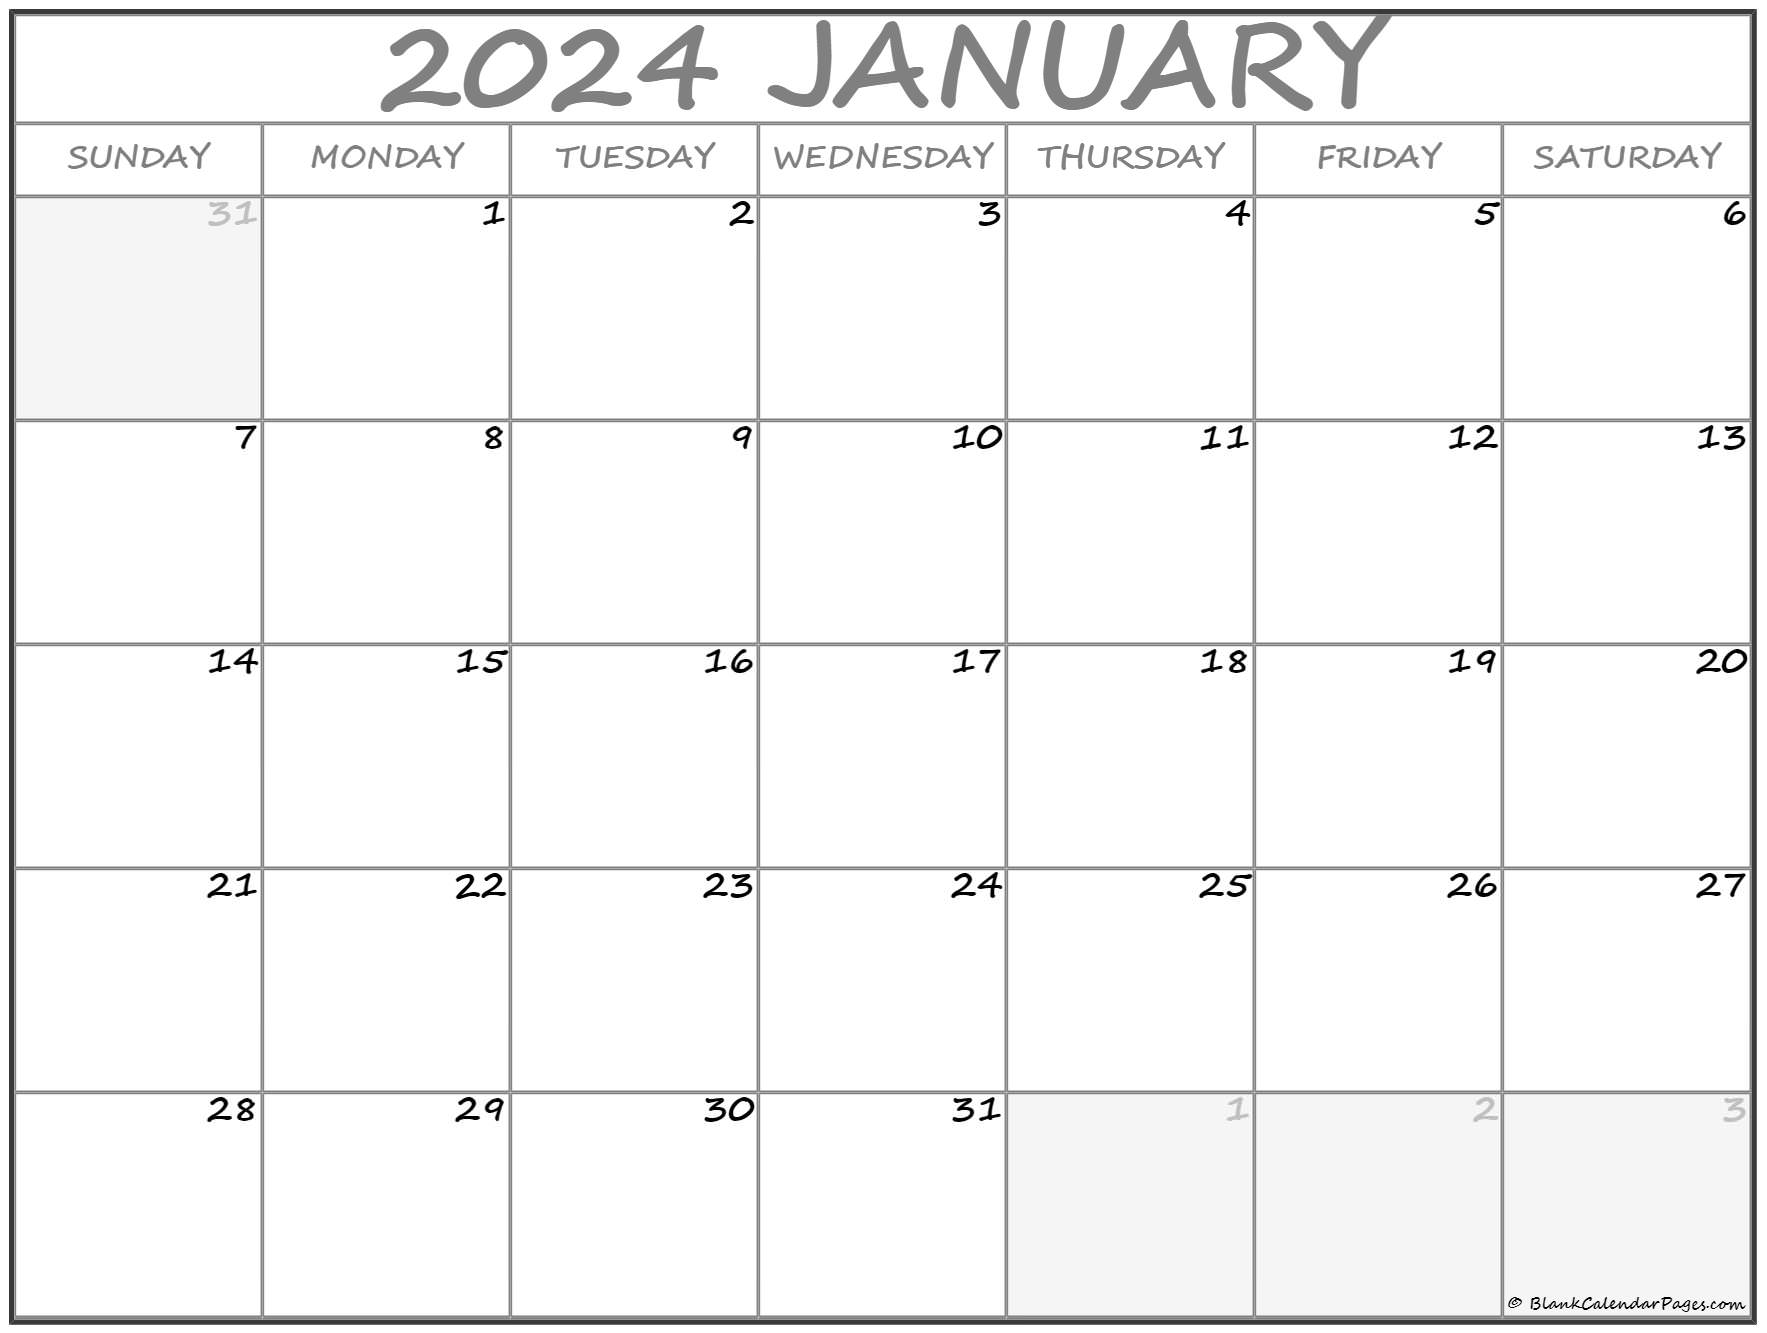 january-2024-calendar-printable-printable-world-holiday